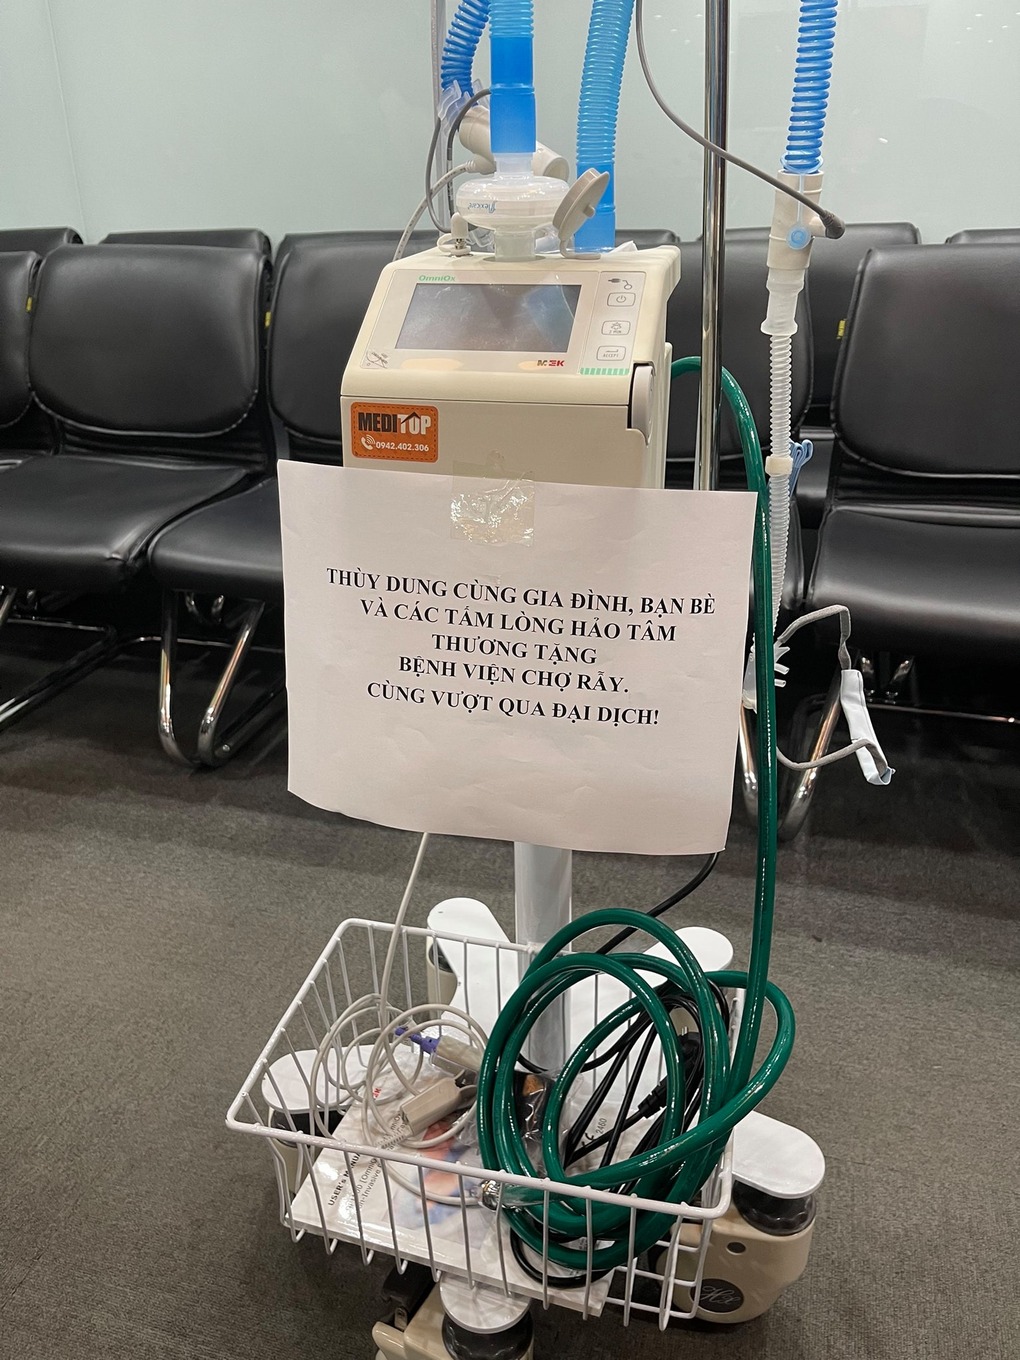 Á hậu thùy dung tặng máy thở oxy cho bệnh viện - 2